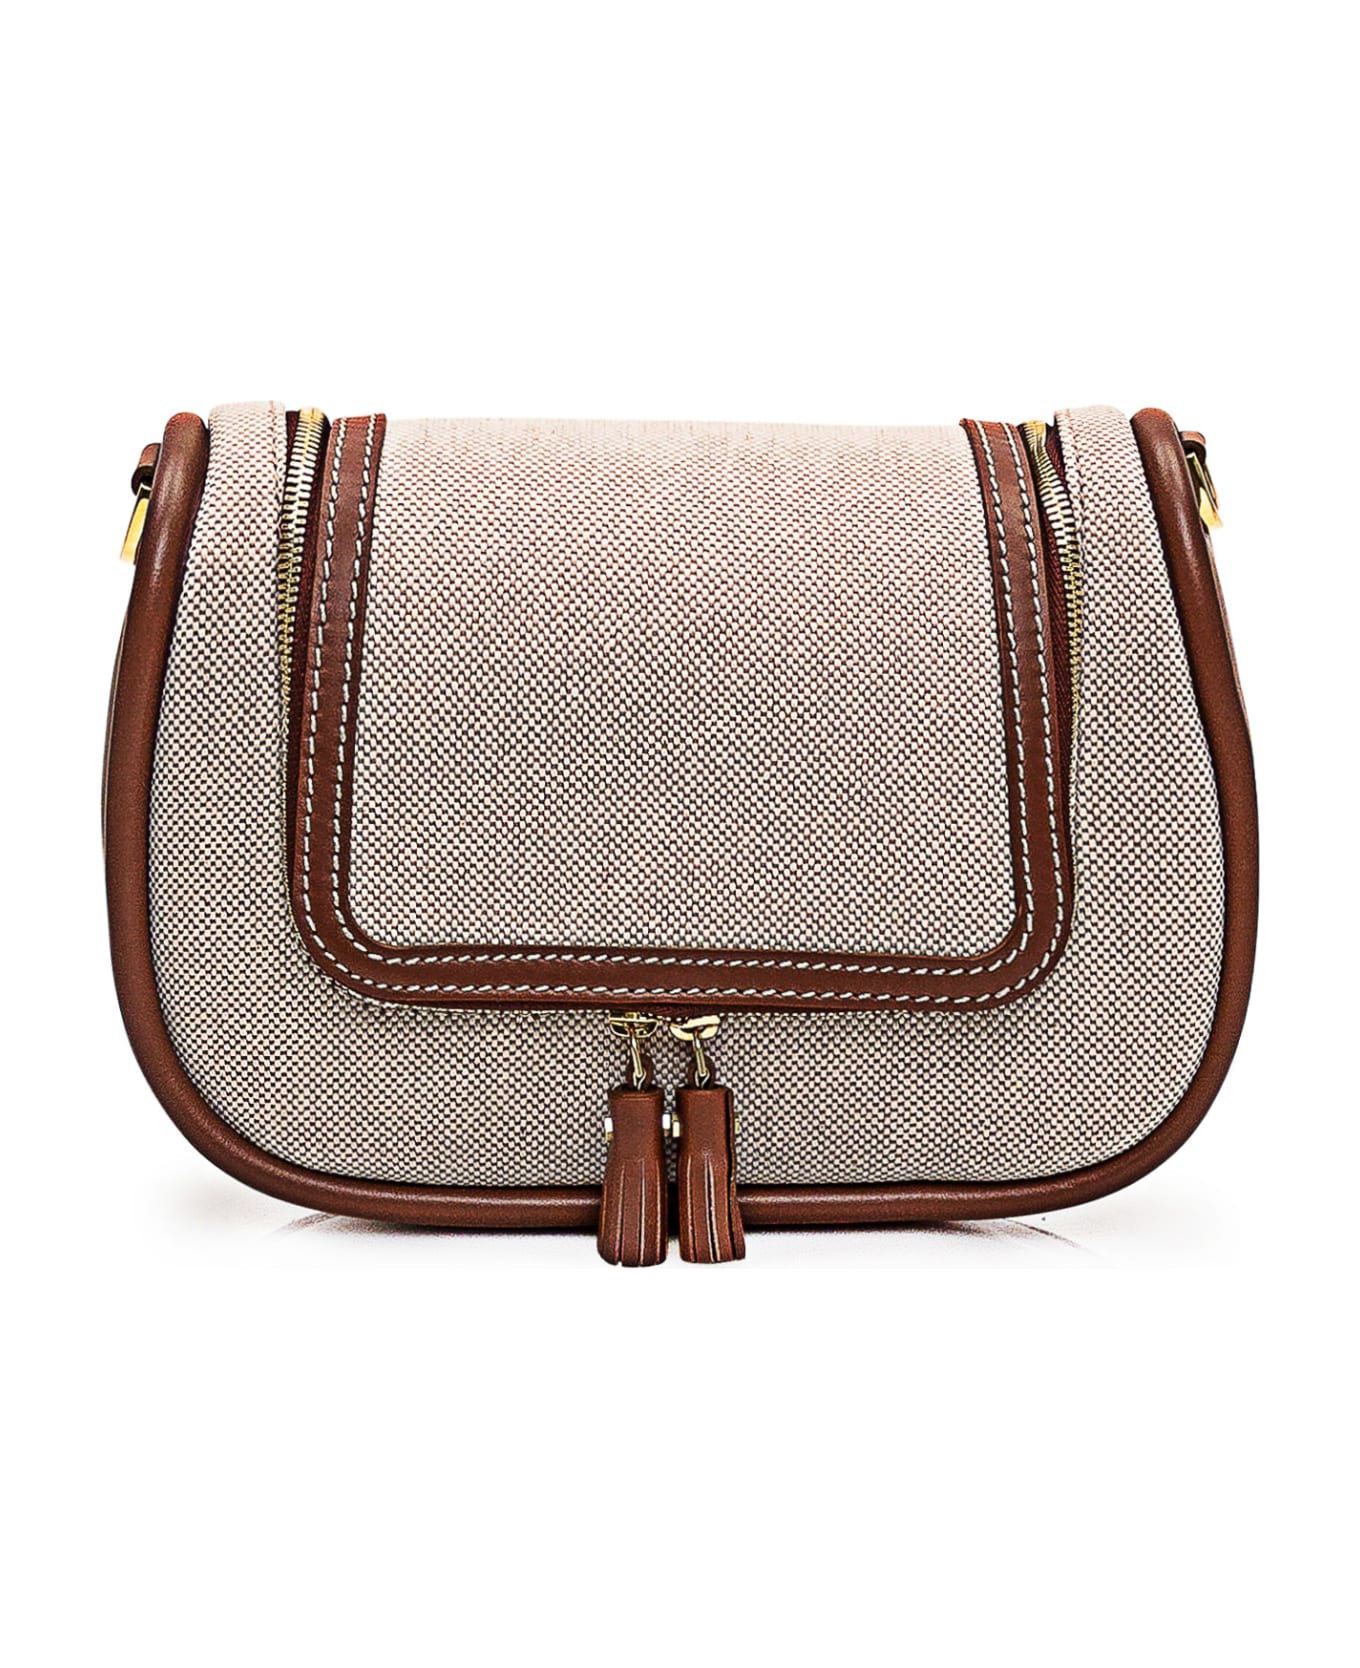 Anya Hindmarch Small Vere Soft Bag - NATURAL